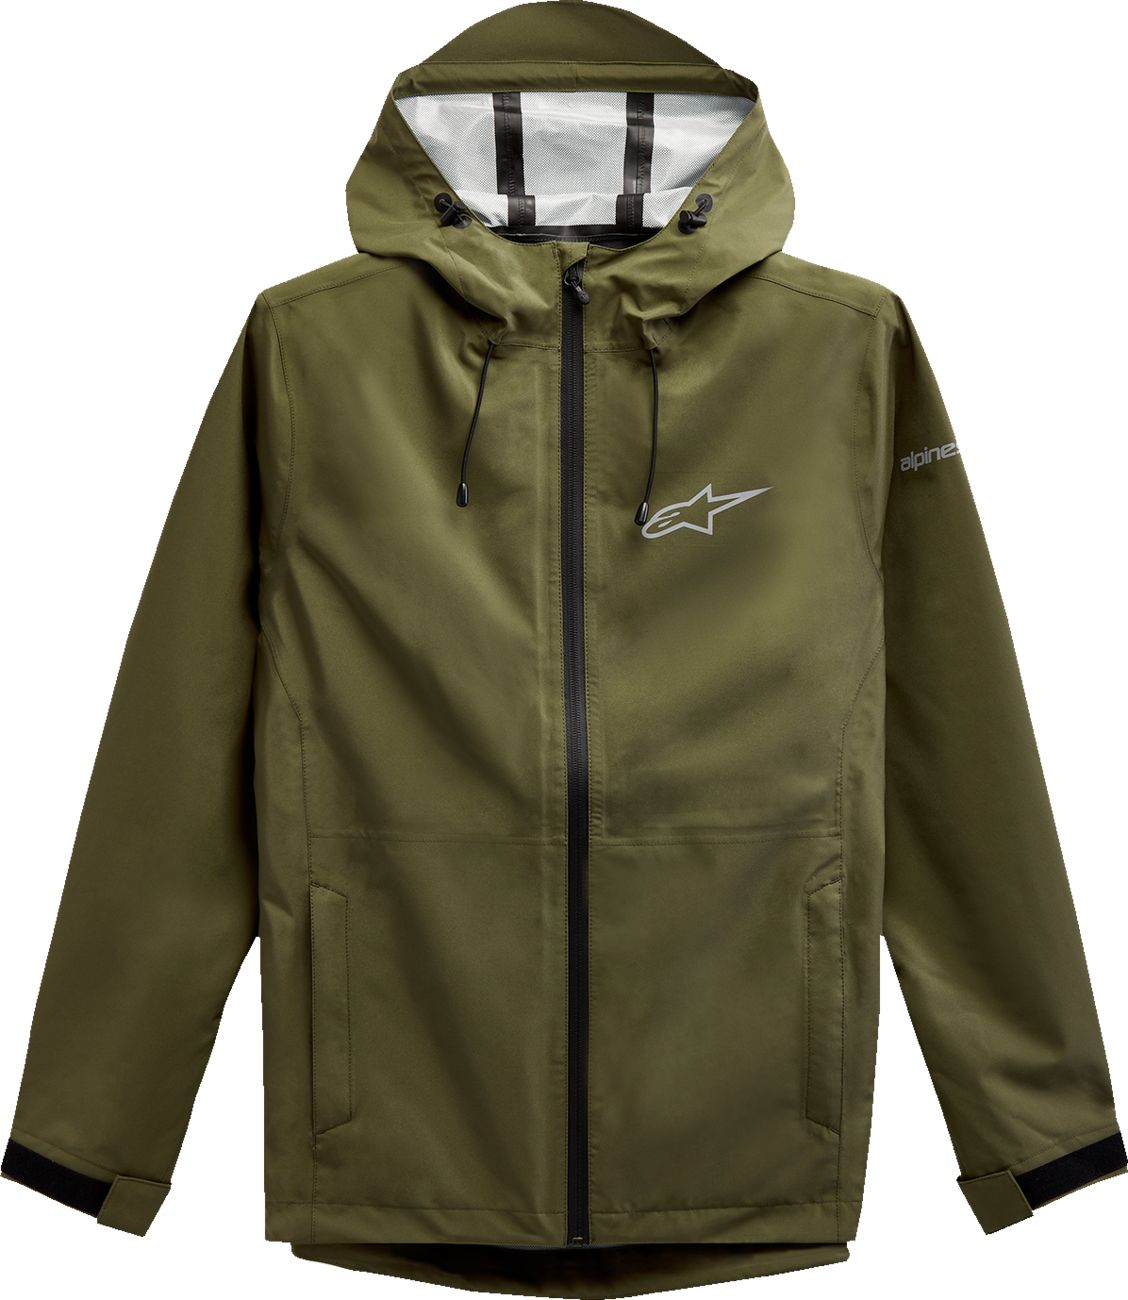 ALPINESTARS Omni Rain Jacket - Military Green - Large 123211010690L